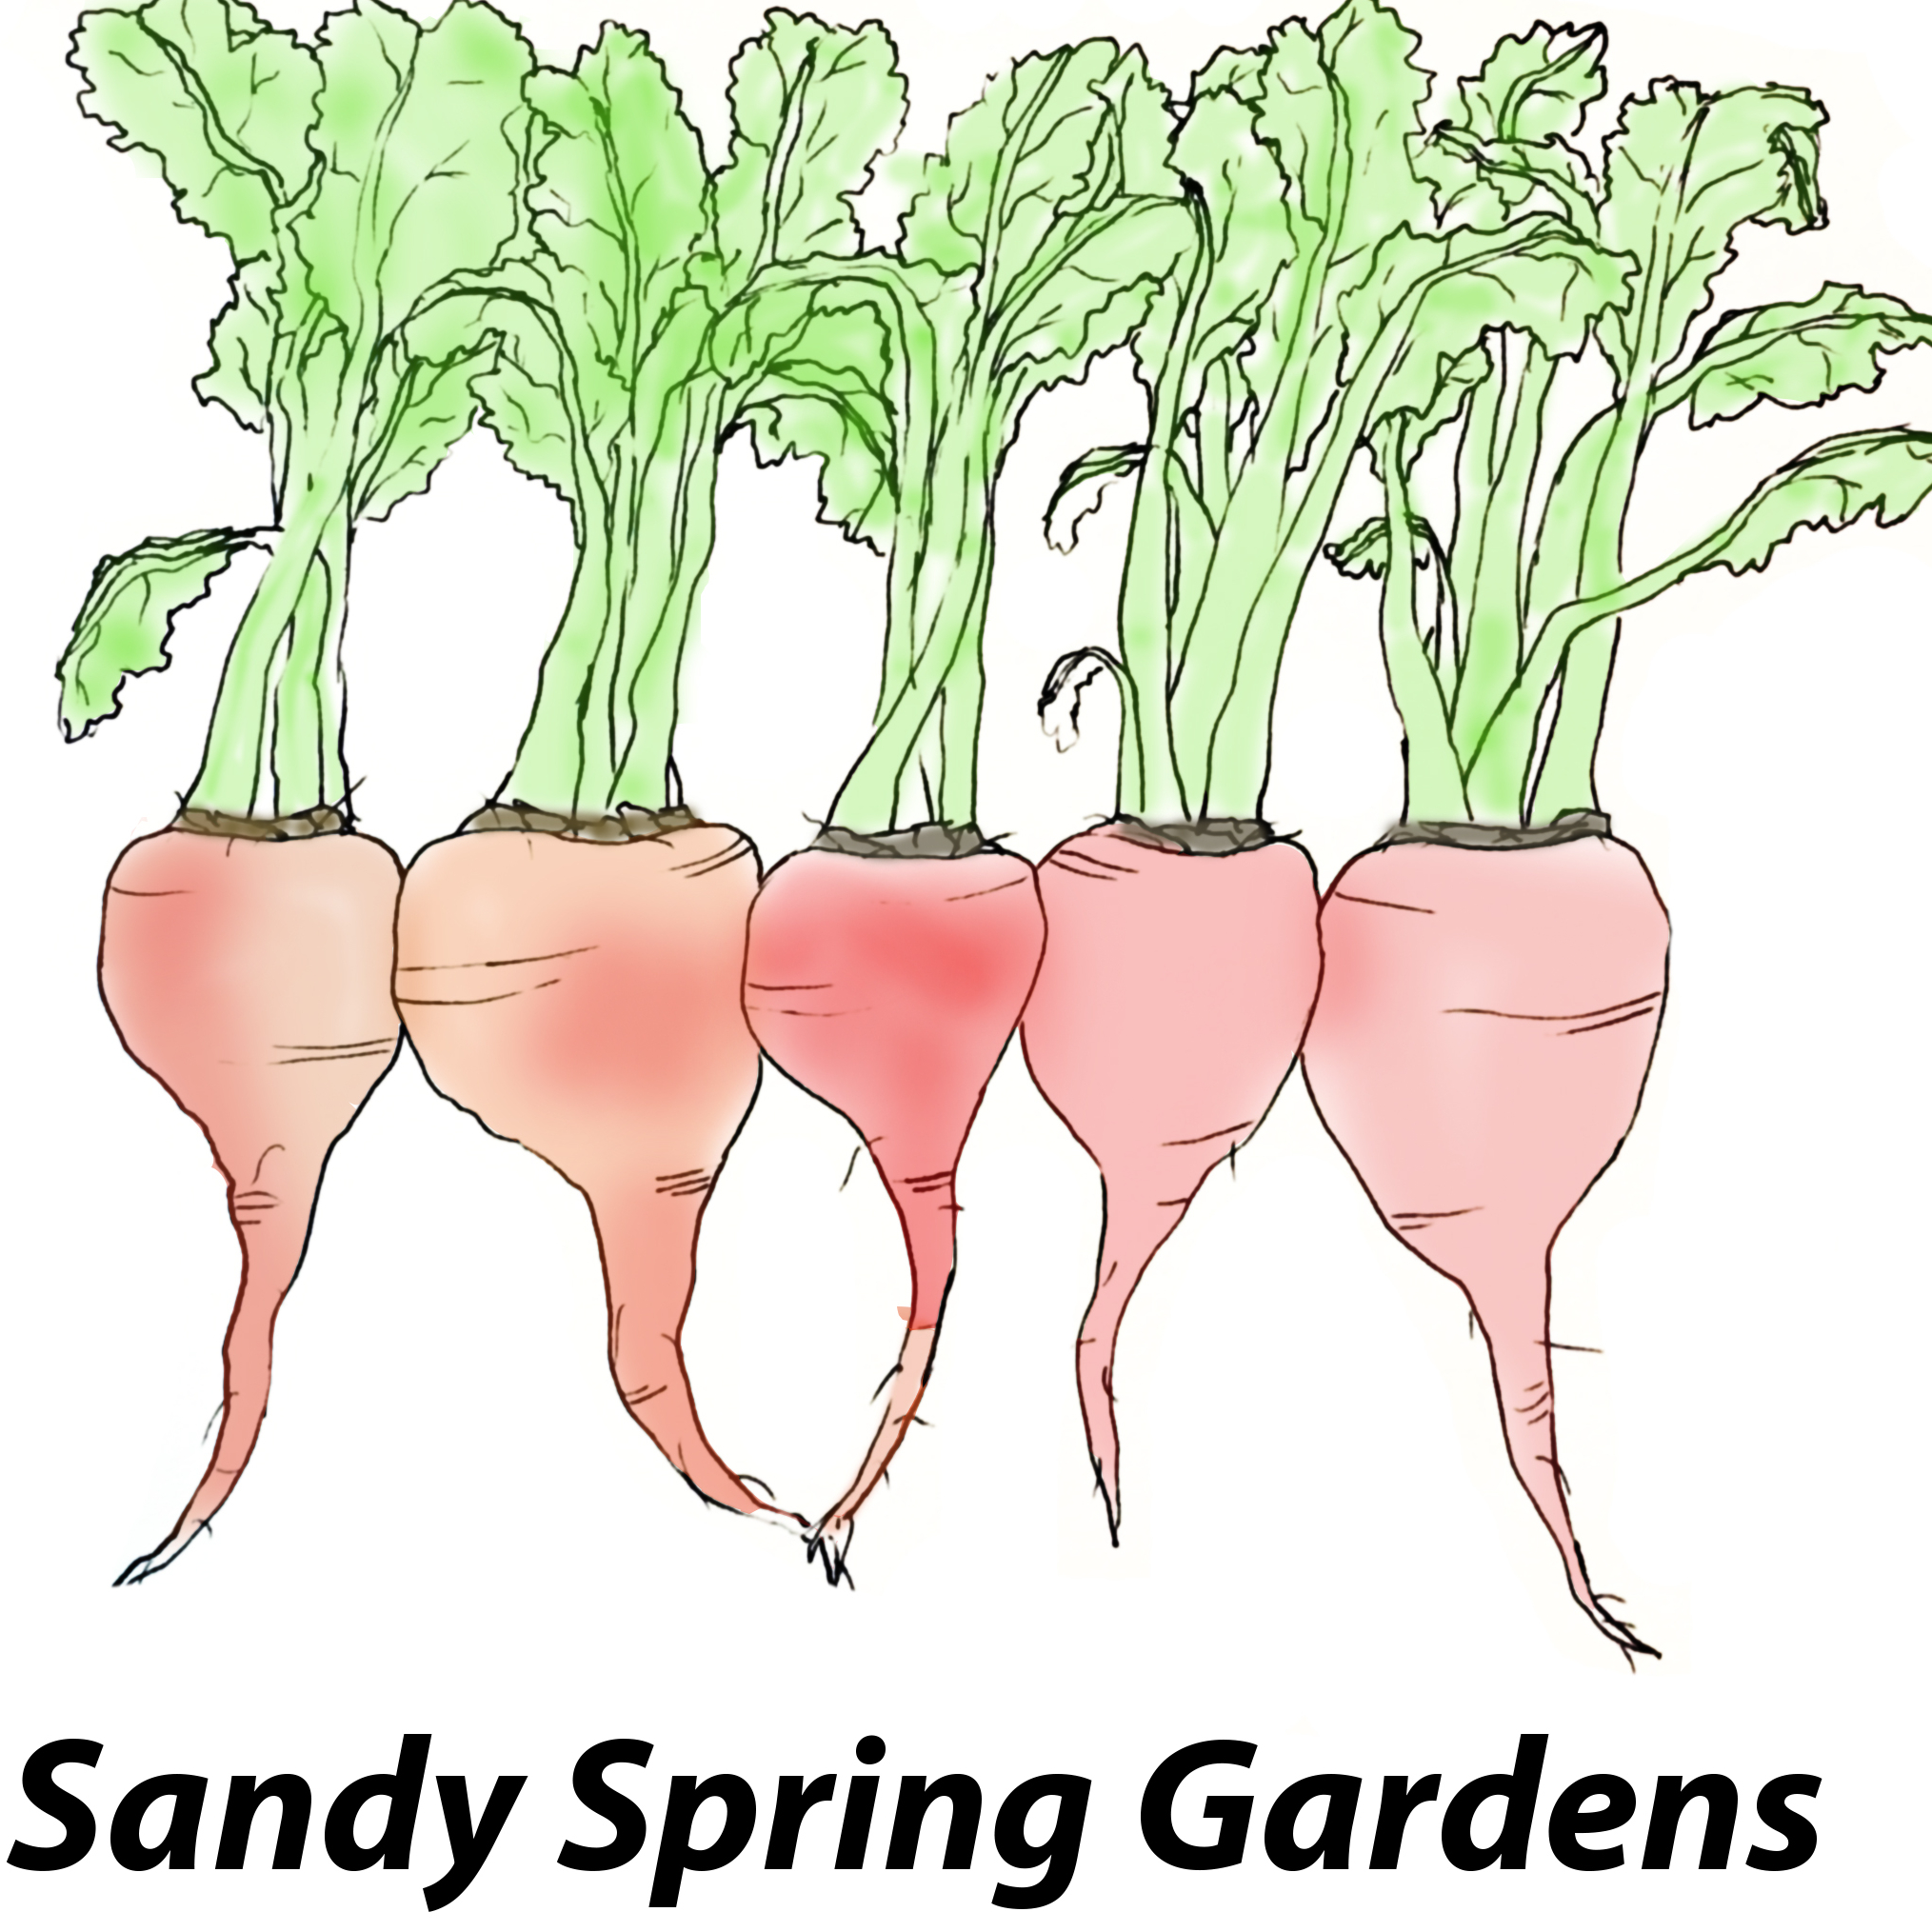 Sandy Spring Gardens